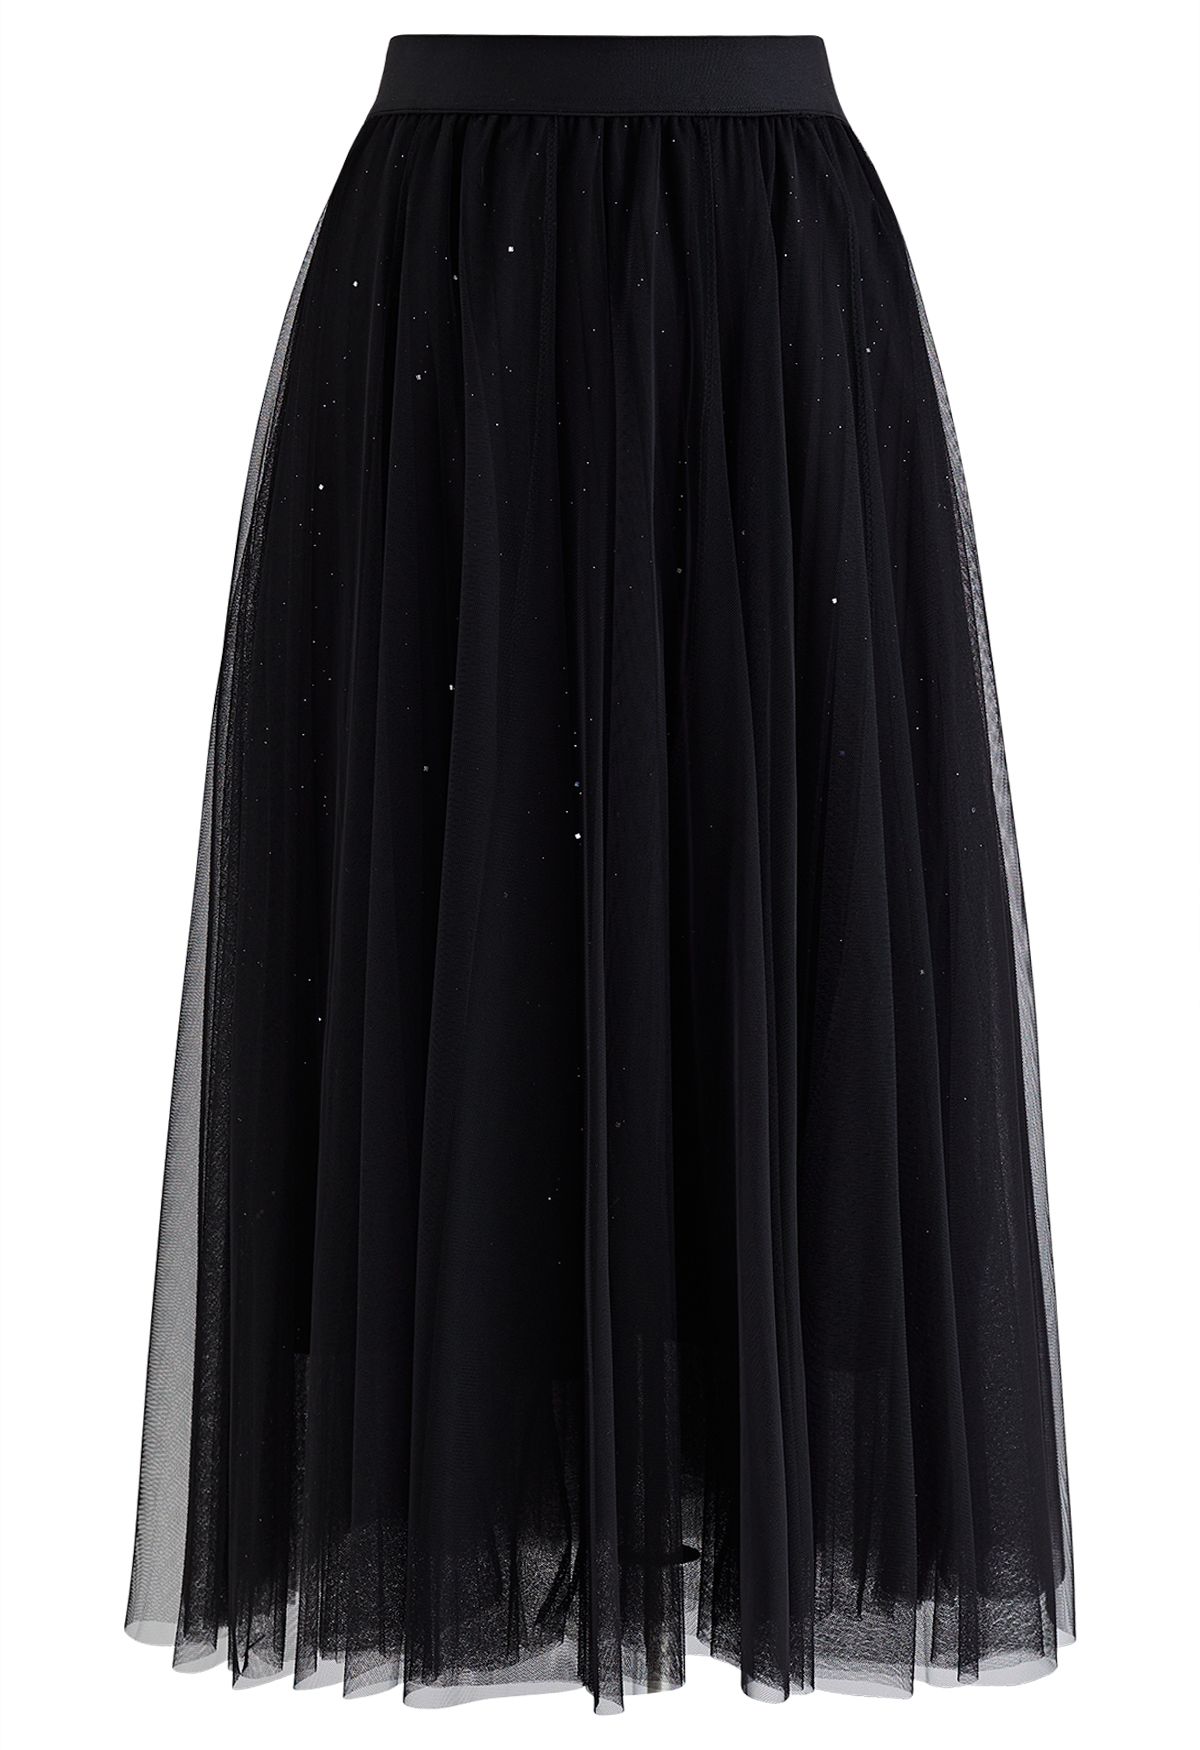 Venus Glitter Mesh Tulle Midi Skirt in Black